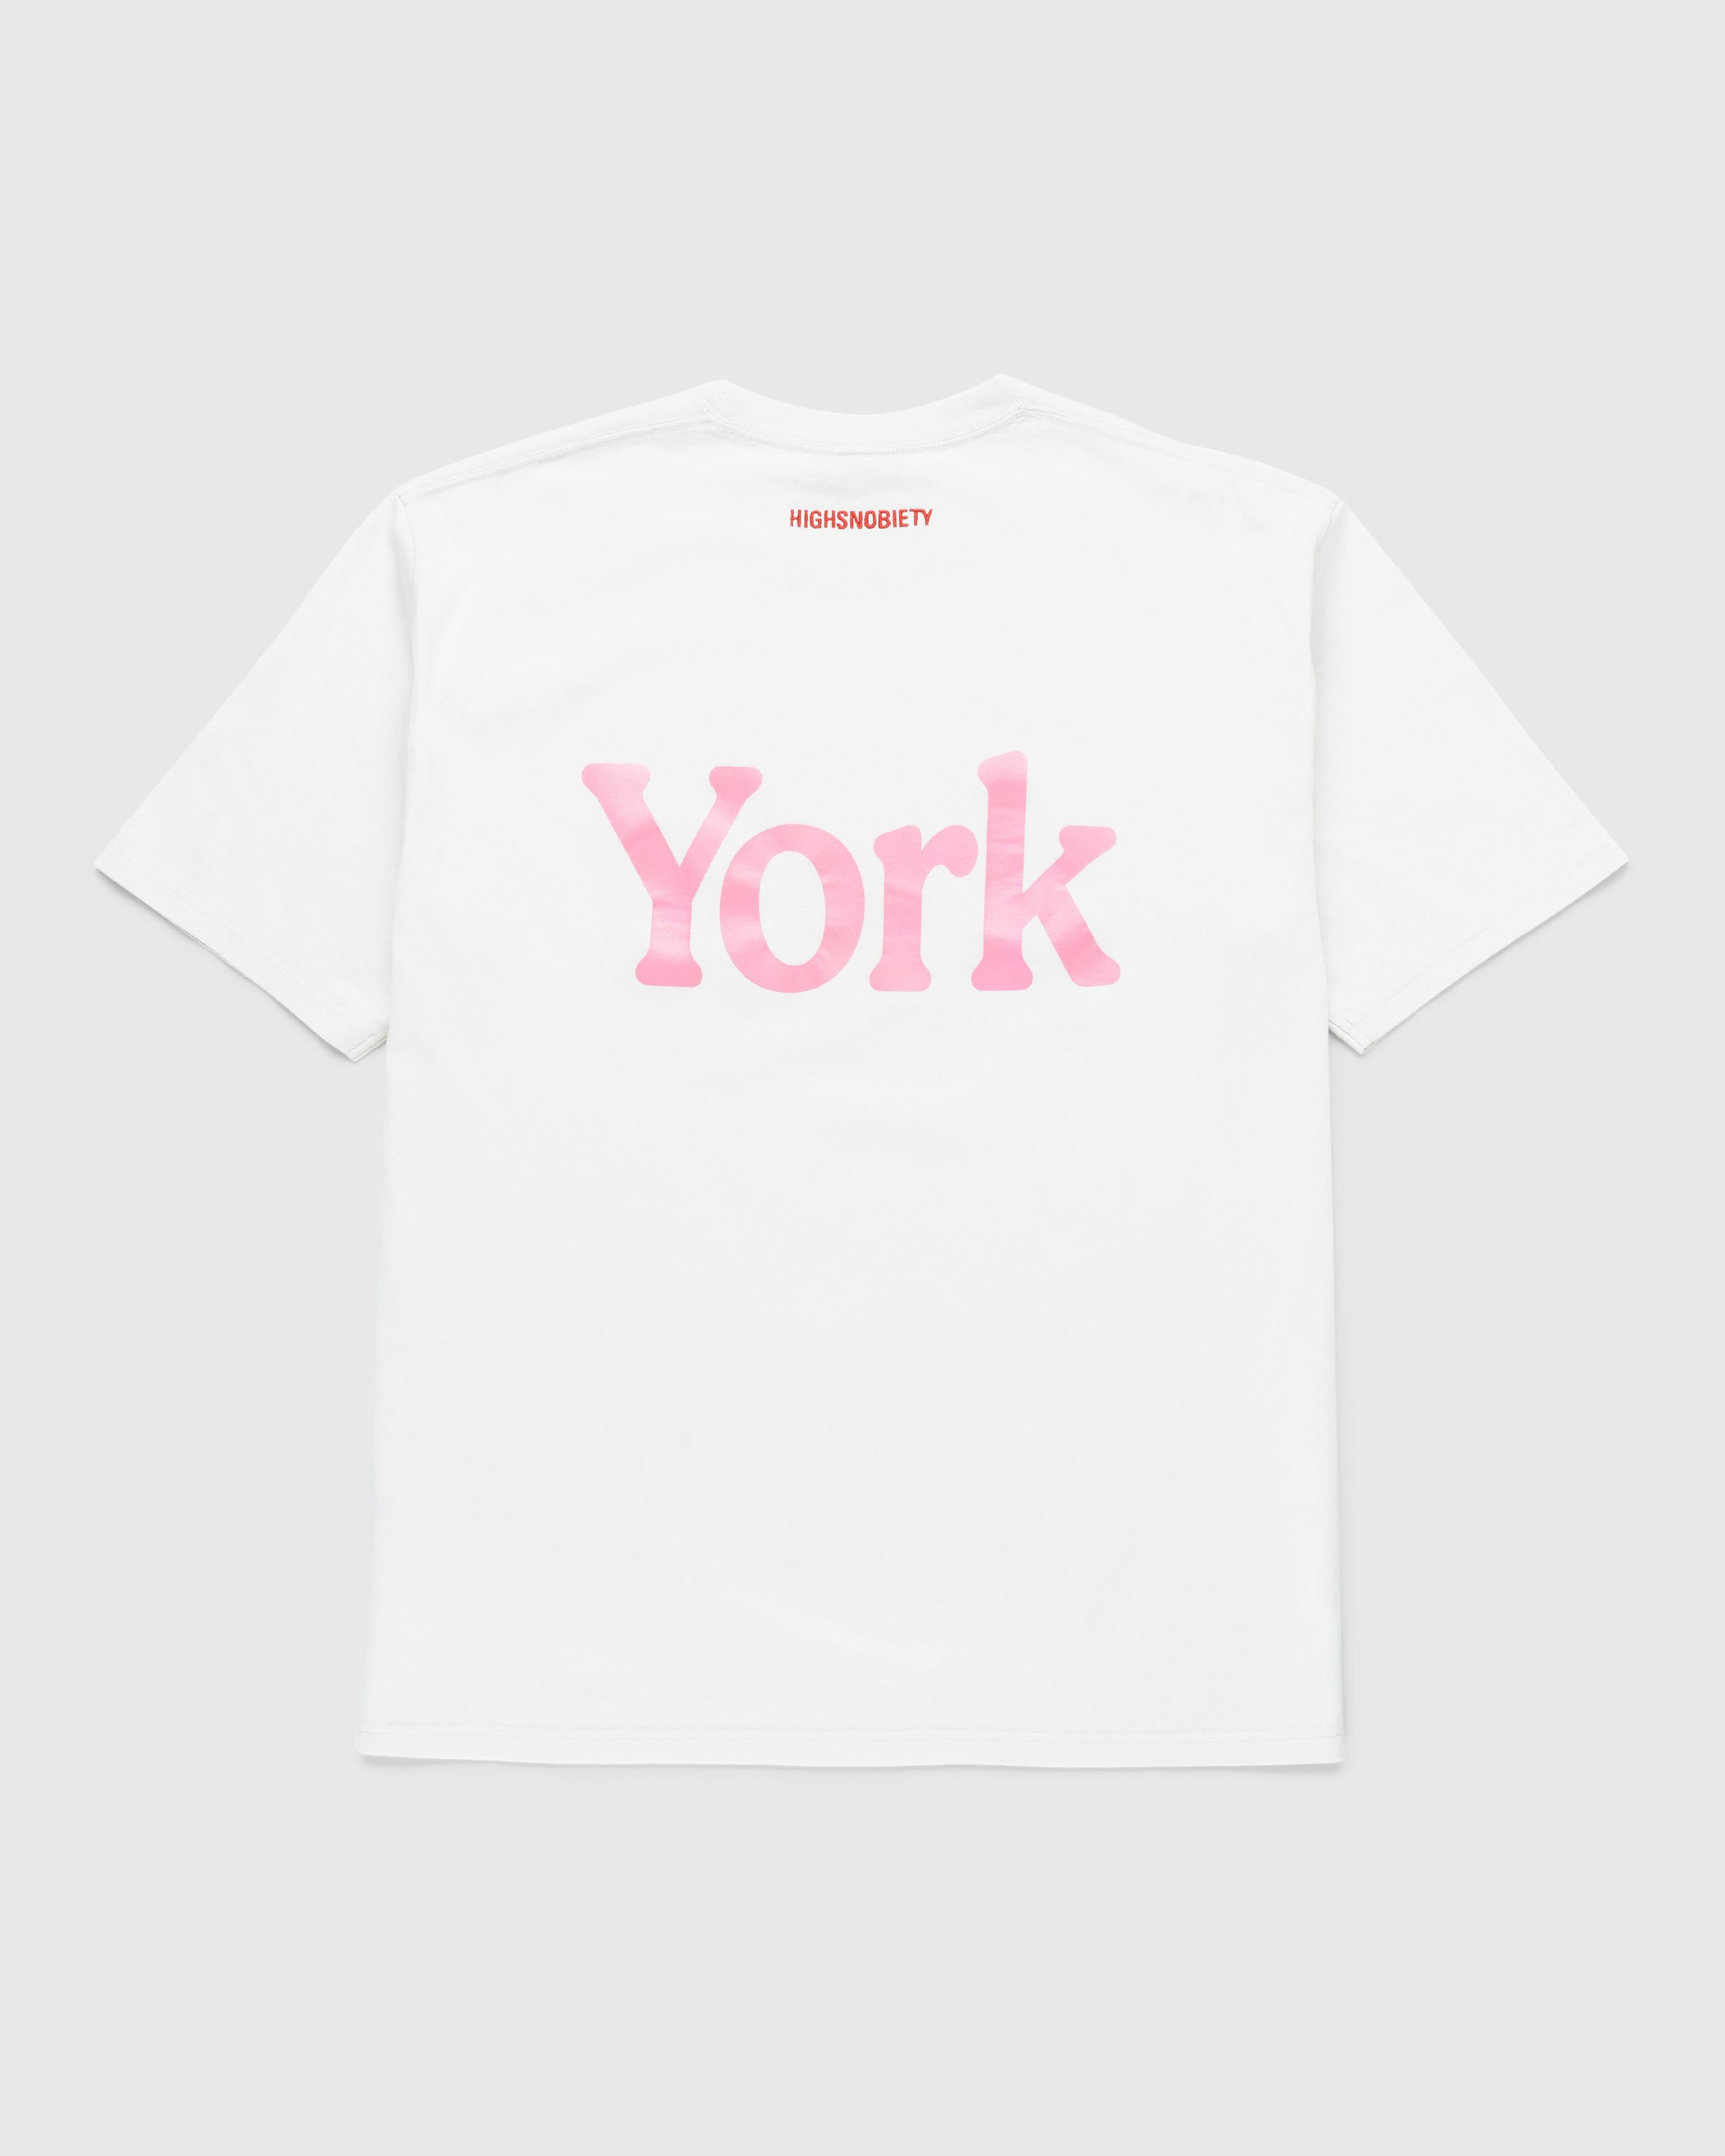 Highsnobiety - Neu York Light Grey T-Shirt - Clothing - Grey - Image 2